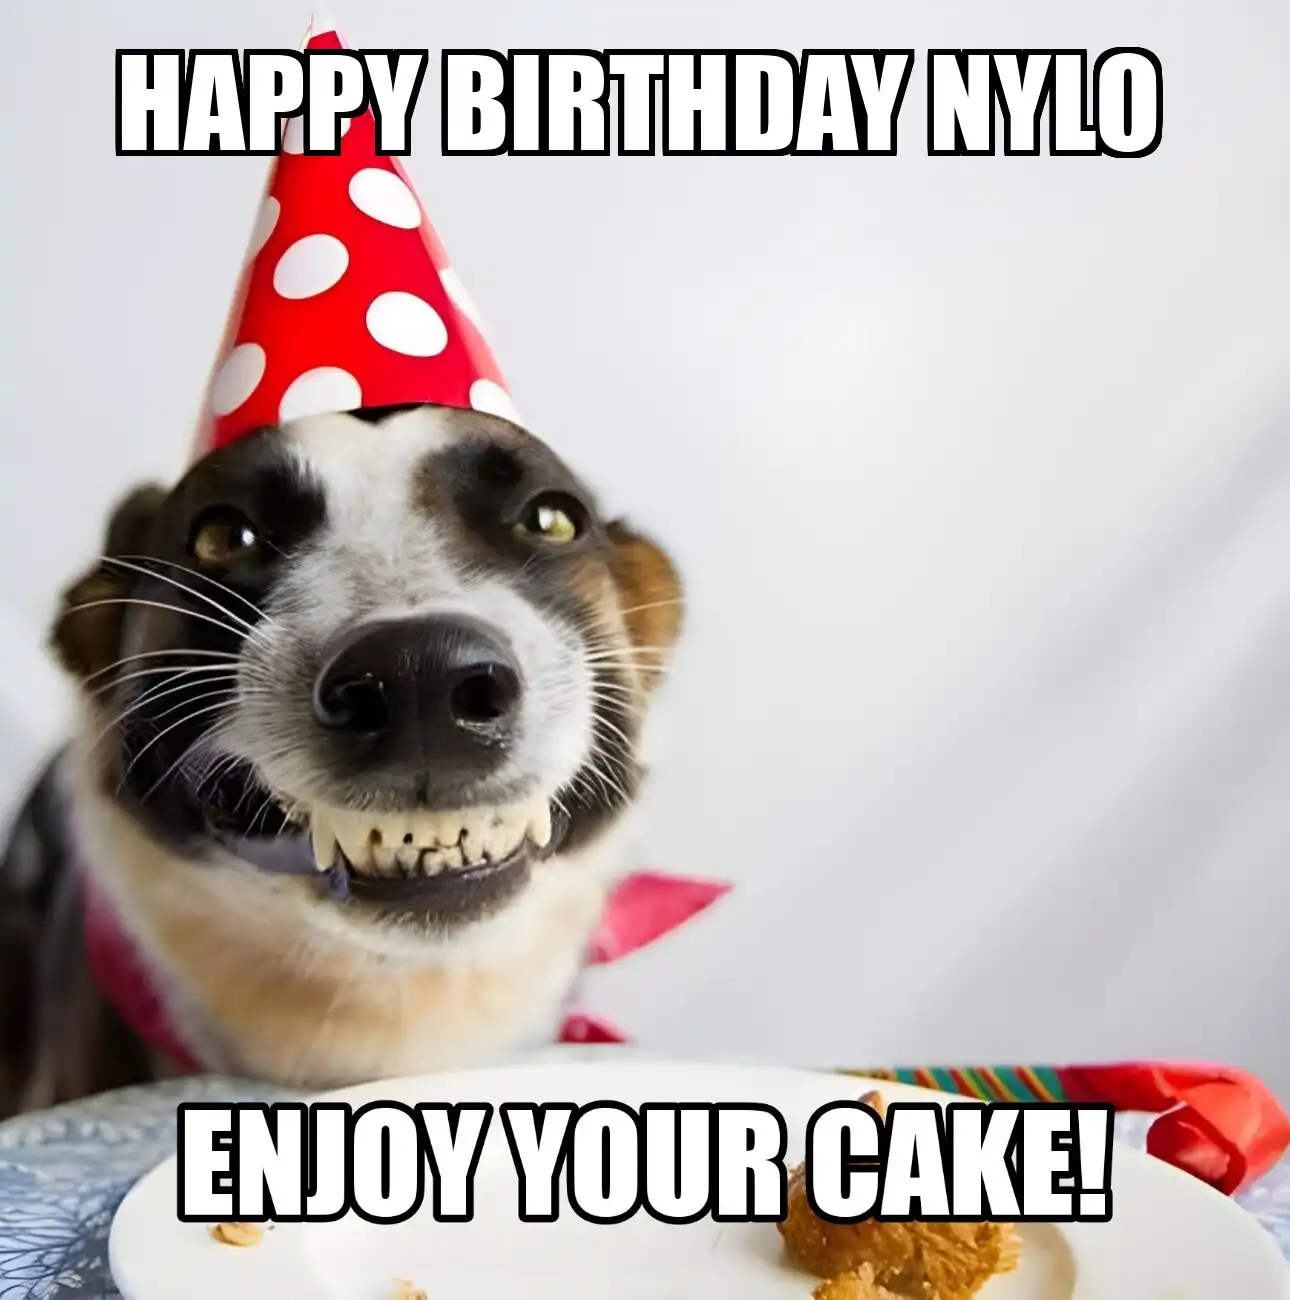 Happy Birthday Nylo Enjoy Your Cake Dog Meme